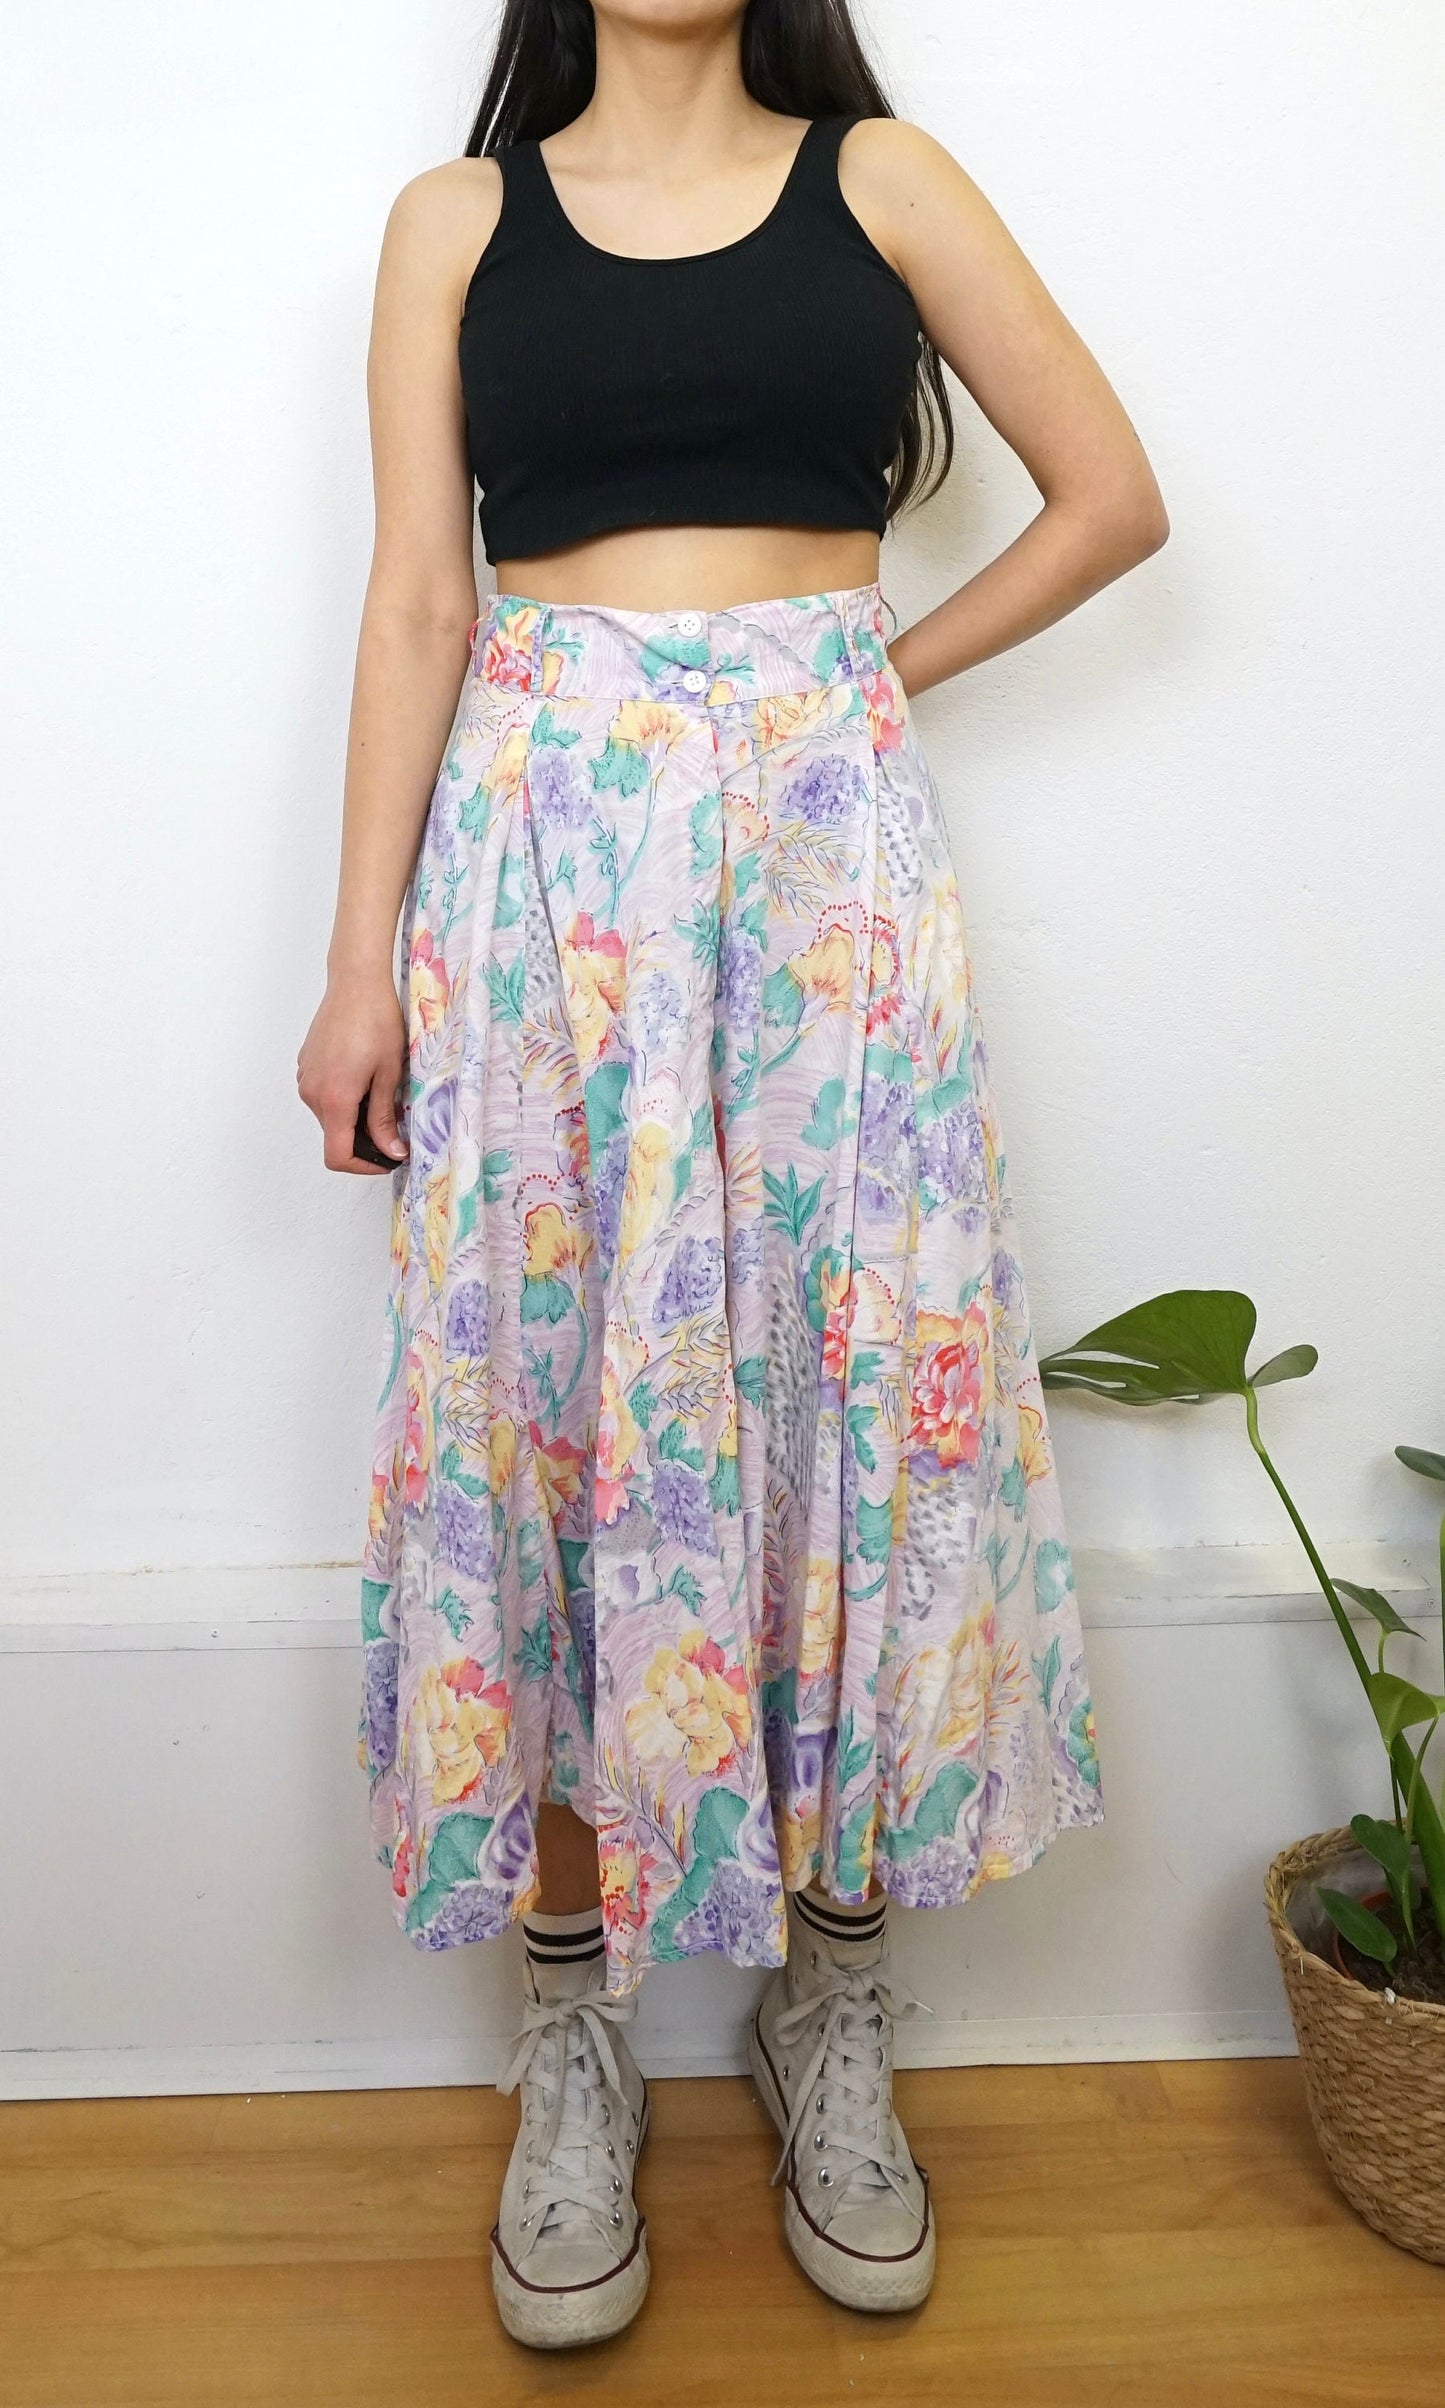 Vintage floral Skirt size L